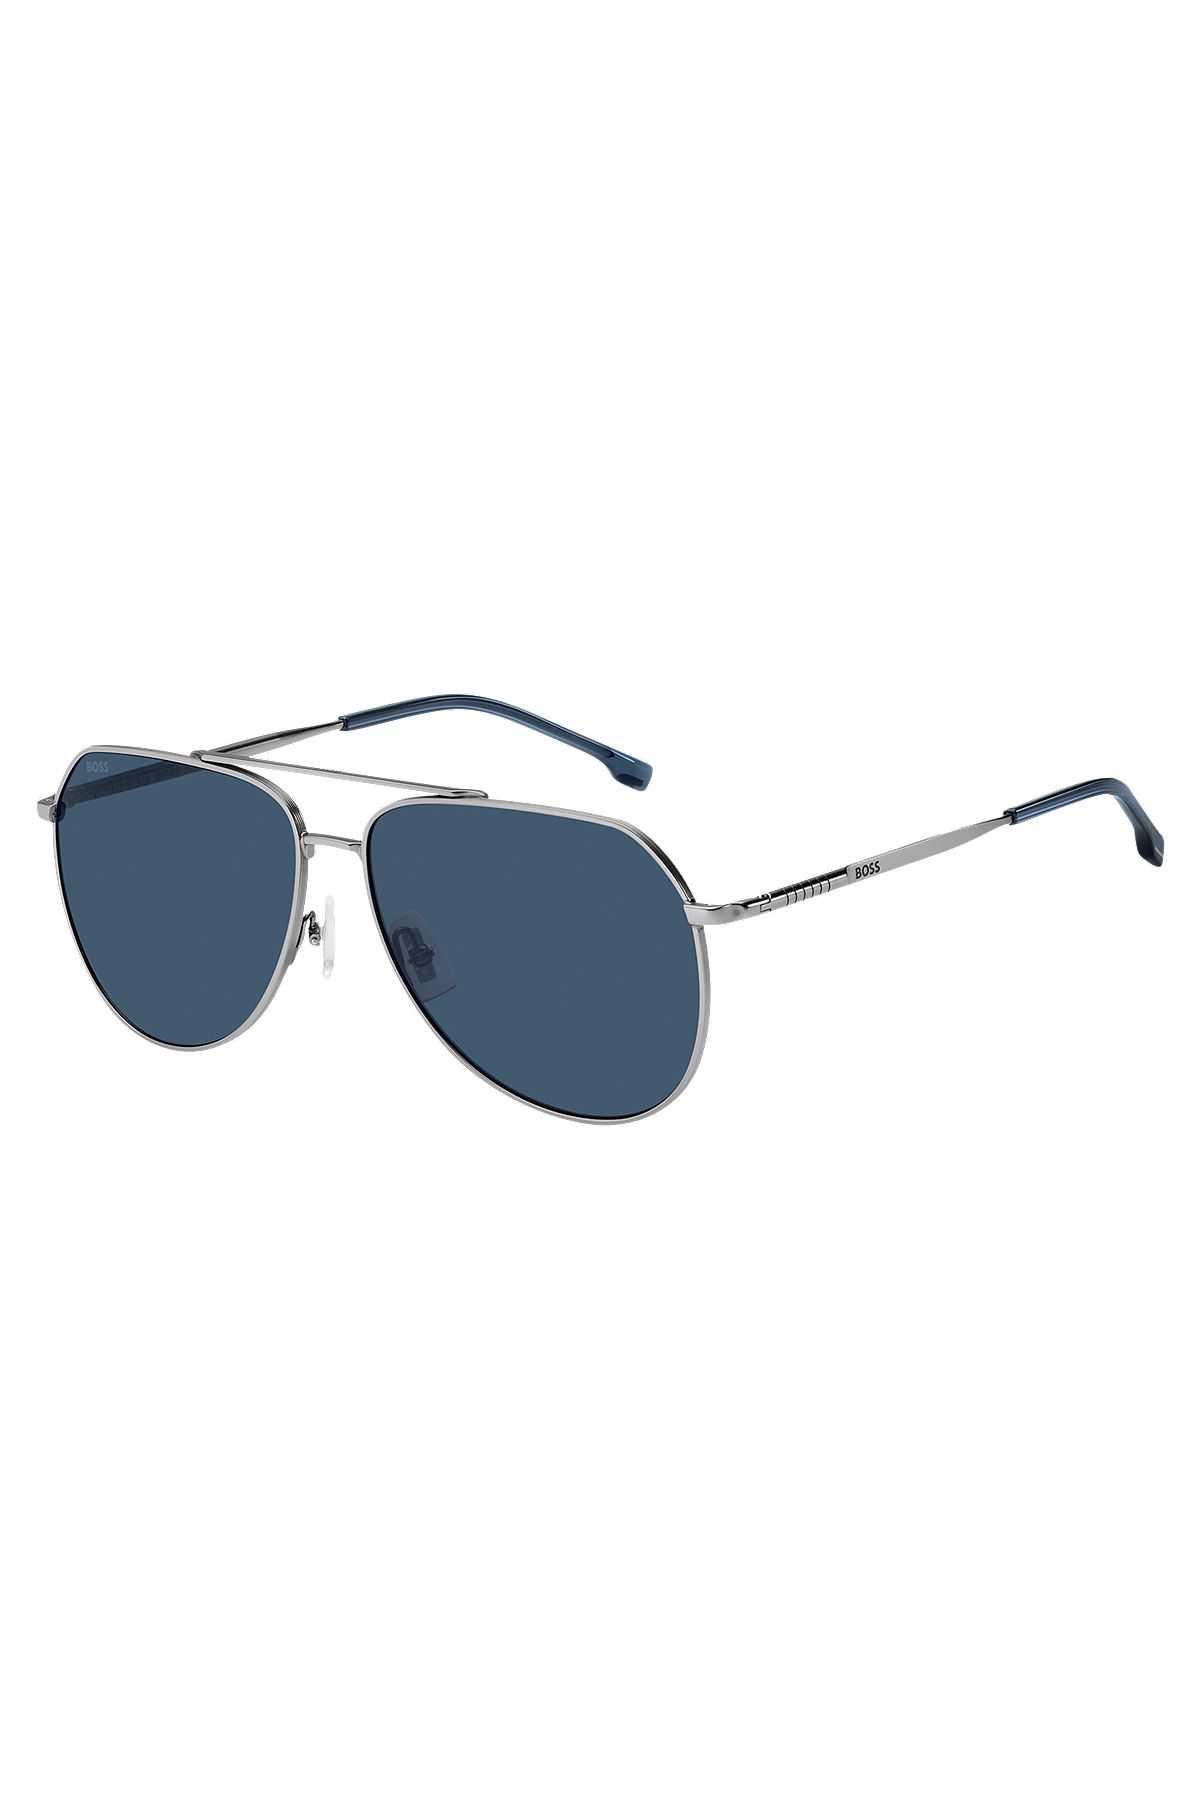 Double-bridge sunglasses with beta-titanium temples, Assorted-Pre-Pack